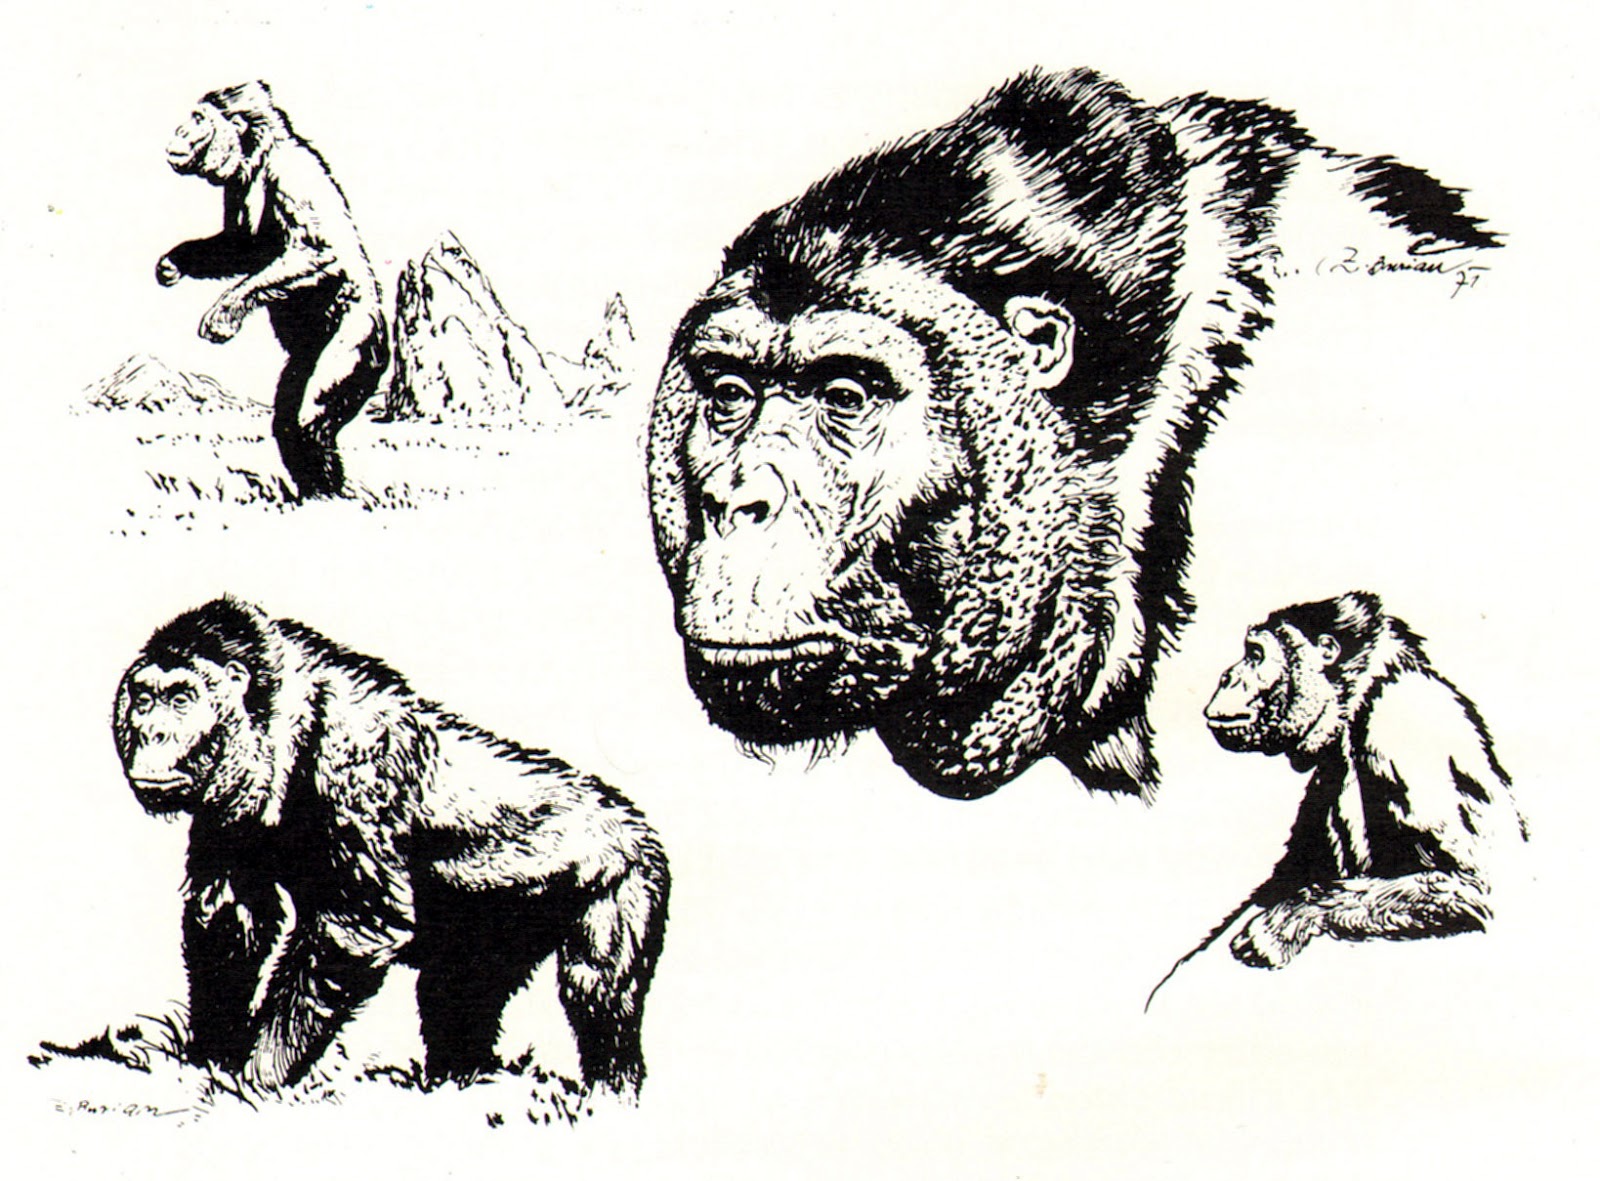 gigantopithecus_blacki_by_zdenek_burian_1971.JPG